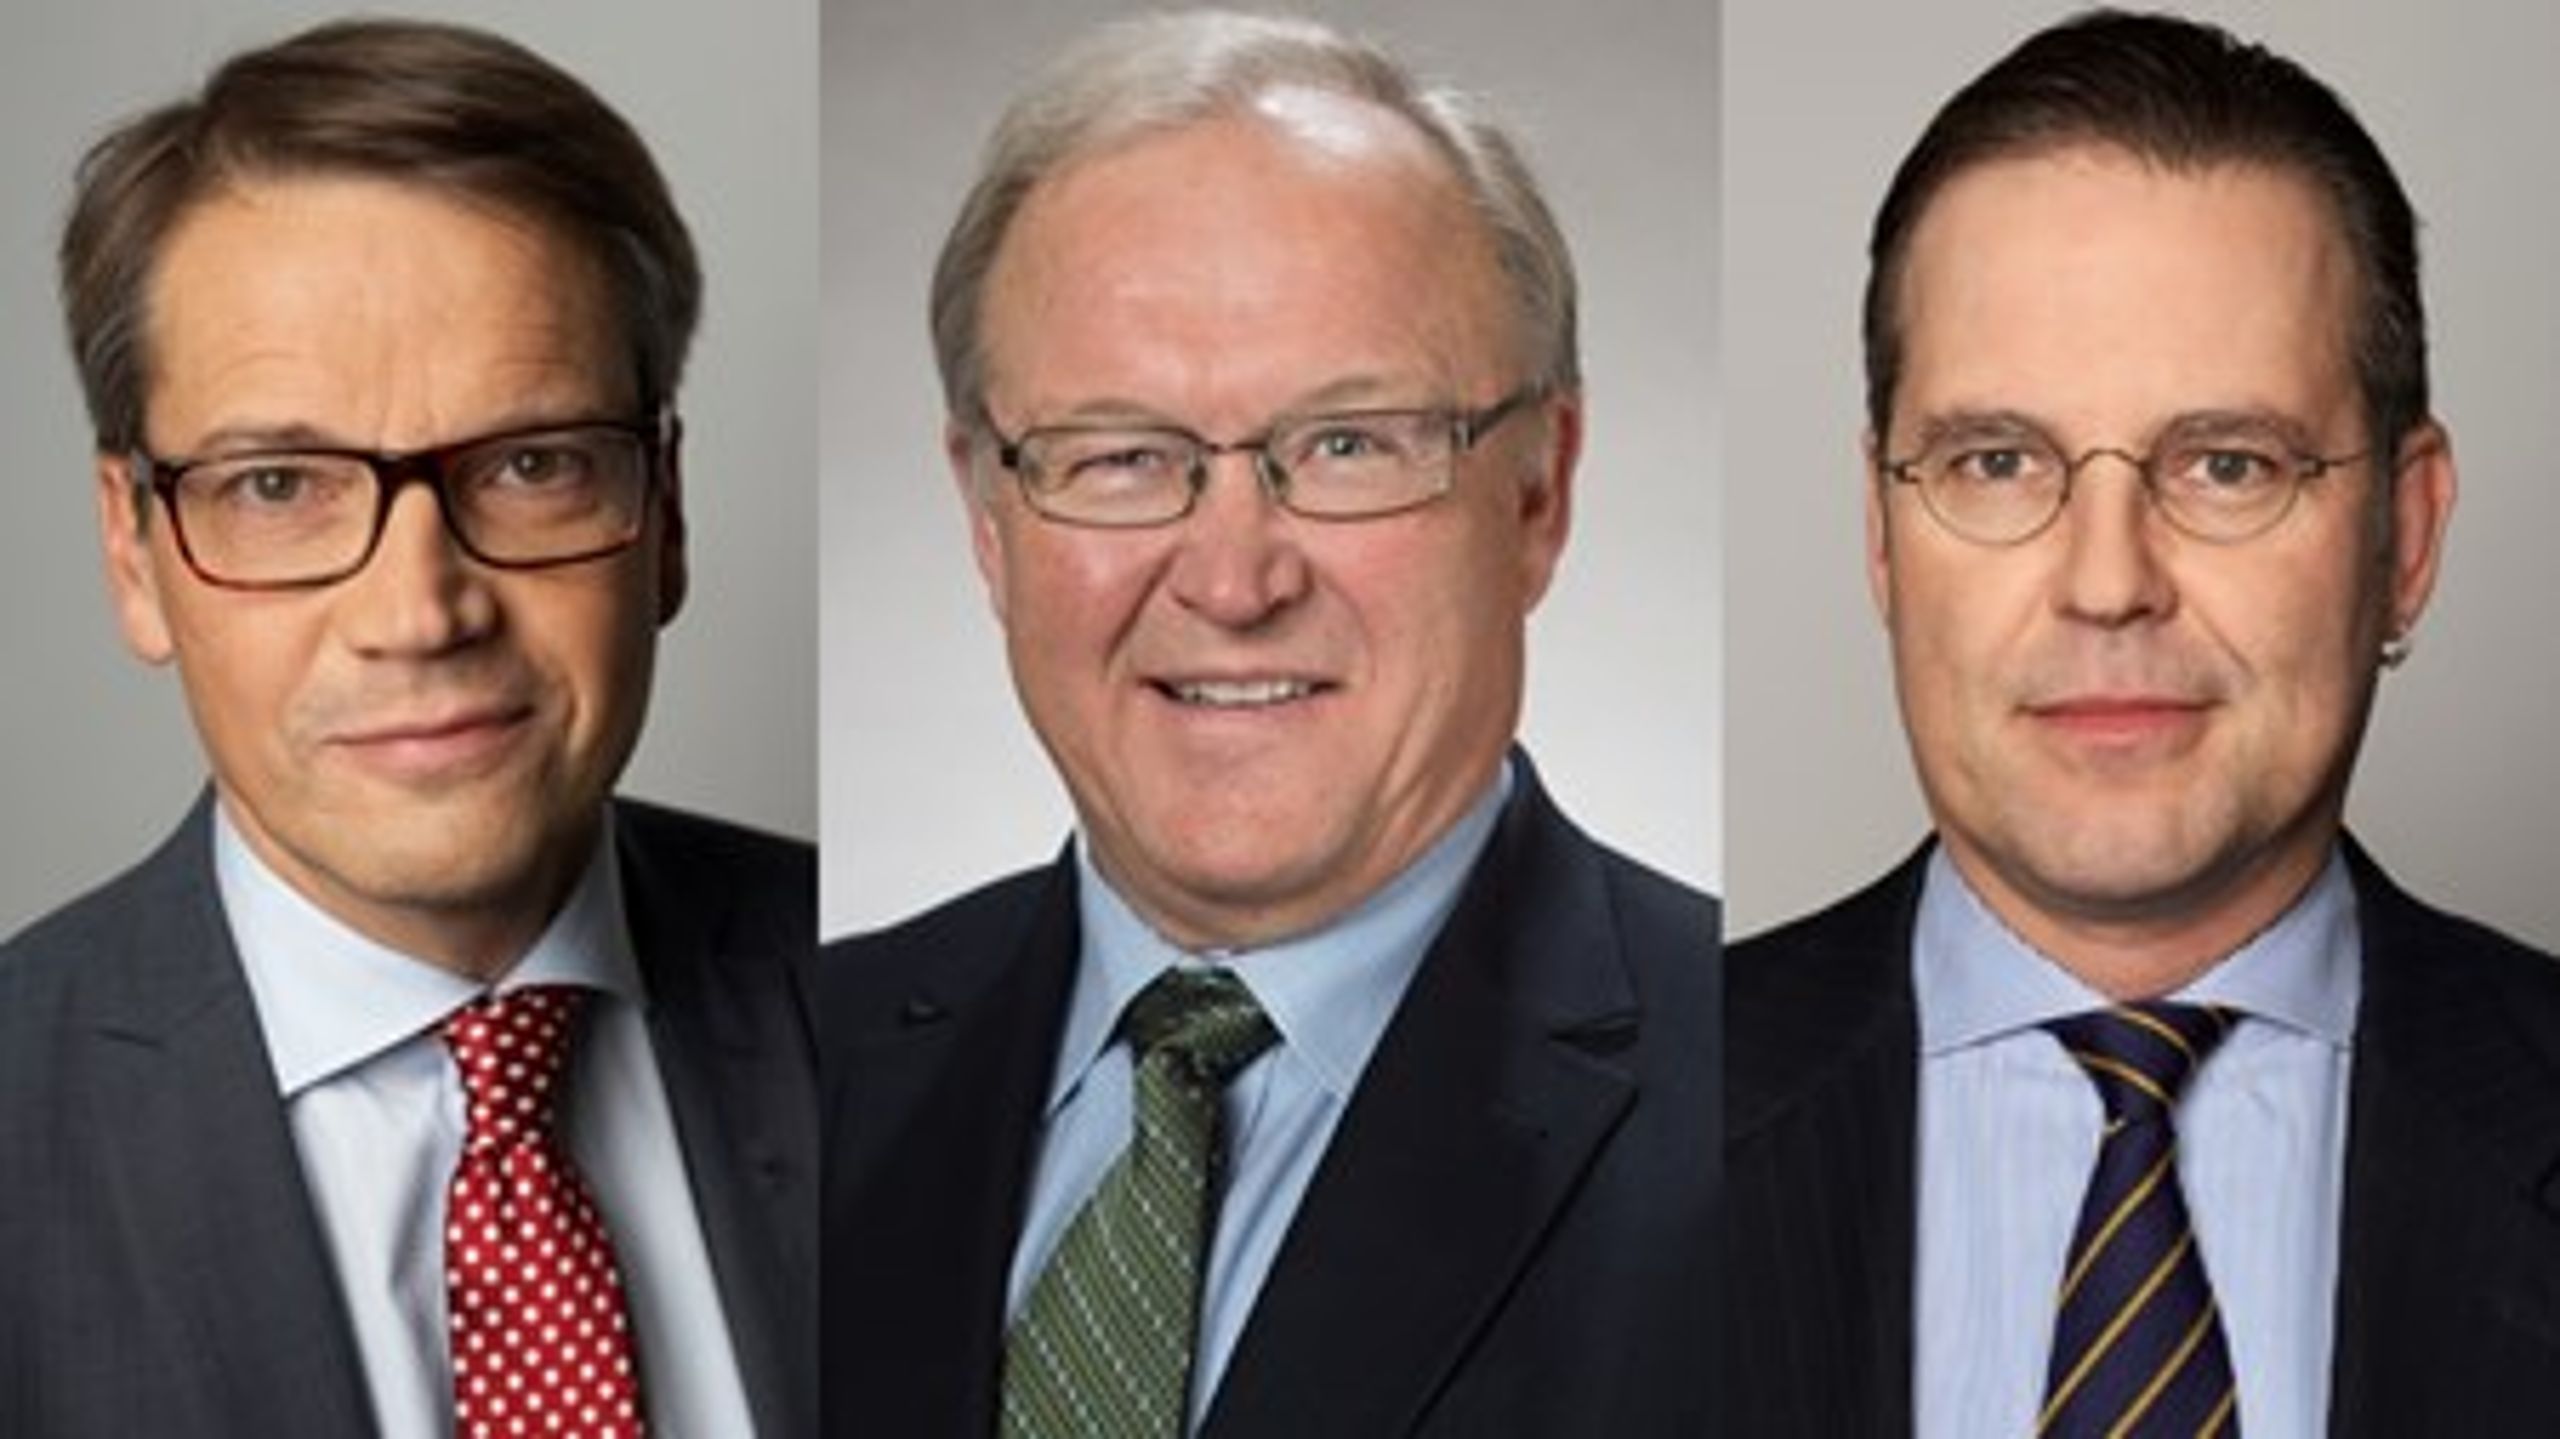 Göran Hägglund, Göran Persson och Anders Borg har alla fått kritik för att ha gått till näringslivet en kort tid&nbsp;efter sina ministerkarriärer.